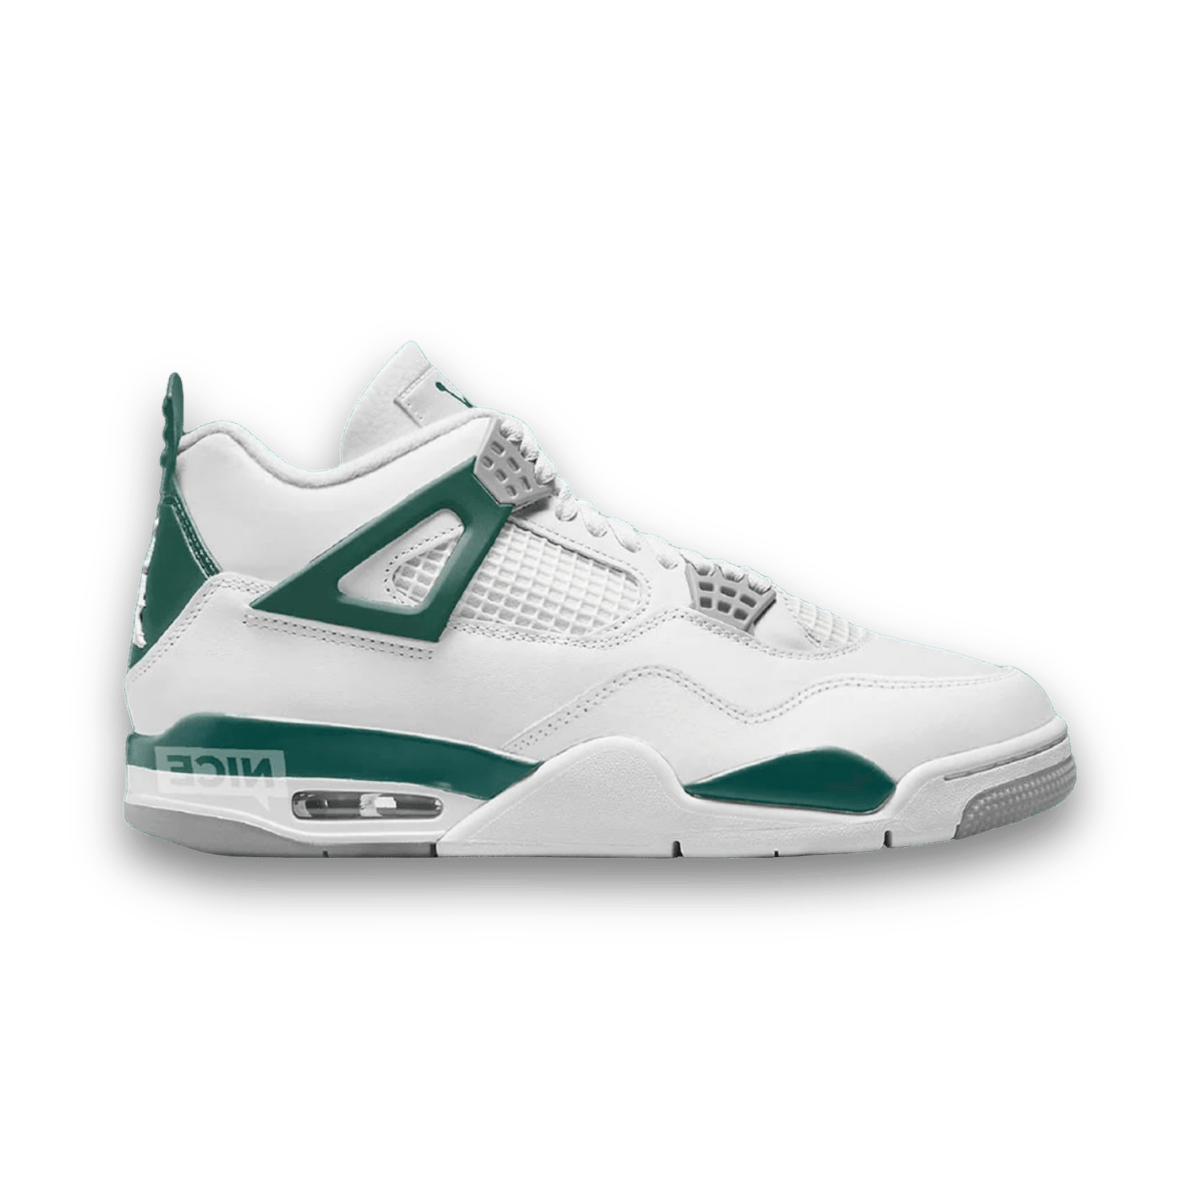 Air Jordan 4 Oxidized Green - Unreleased - Mid Sneaker - Jawns on Fire Sneakers & Streetwear